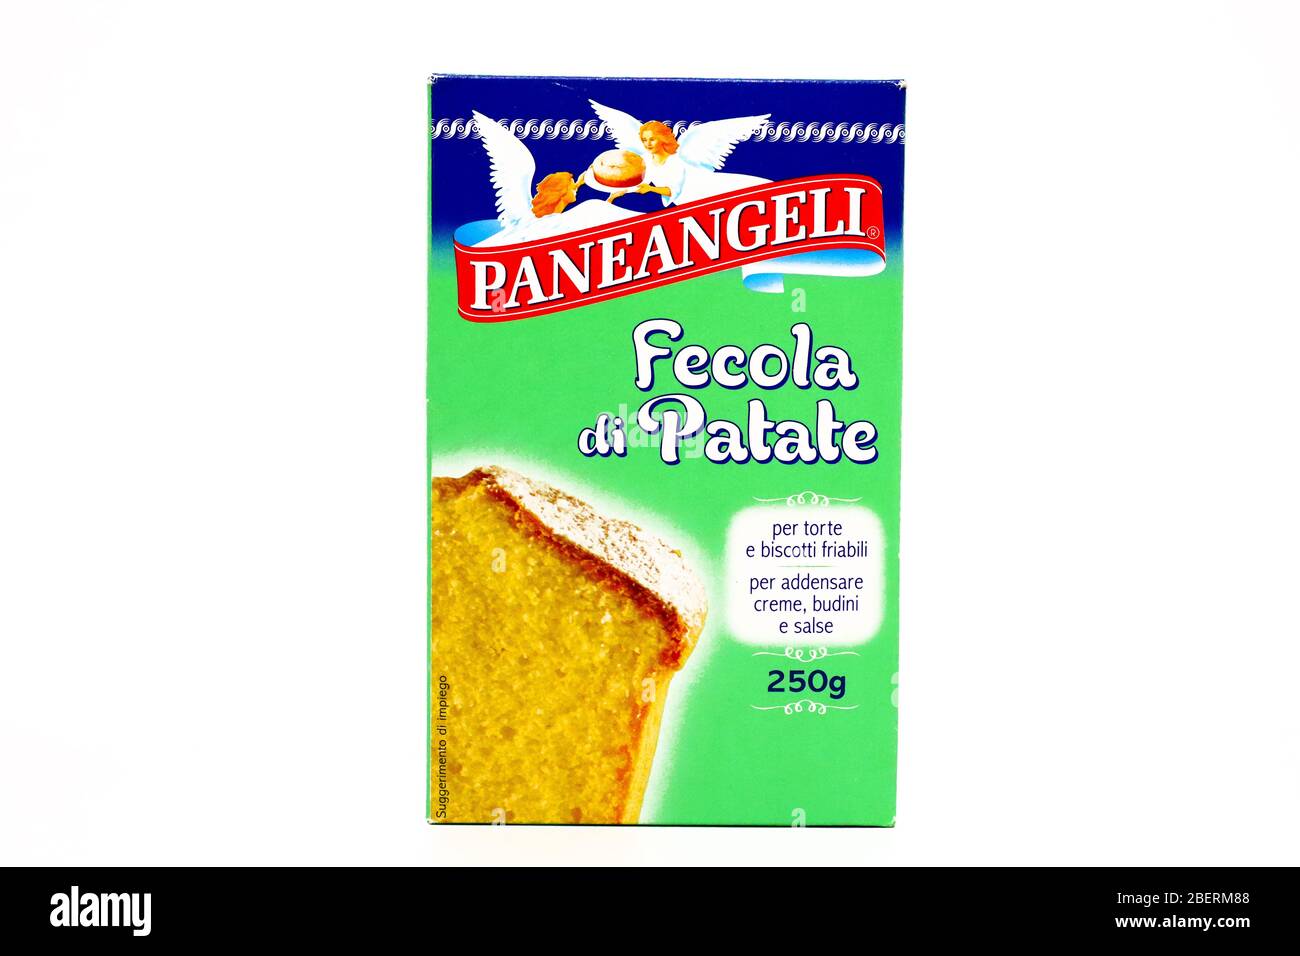 PANEANGELI Kartoffelstärke. Paneangeli ist eine italienische Marke von  Cameo/Dr. Oetker Stockfotografie - Alamy